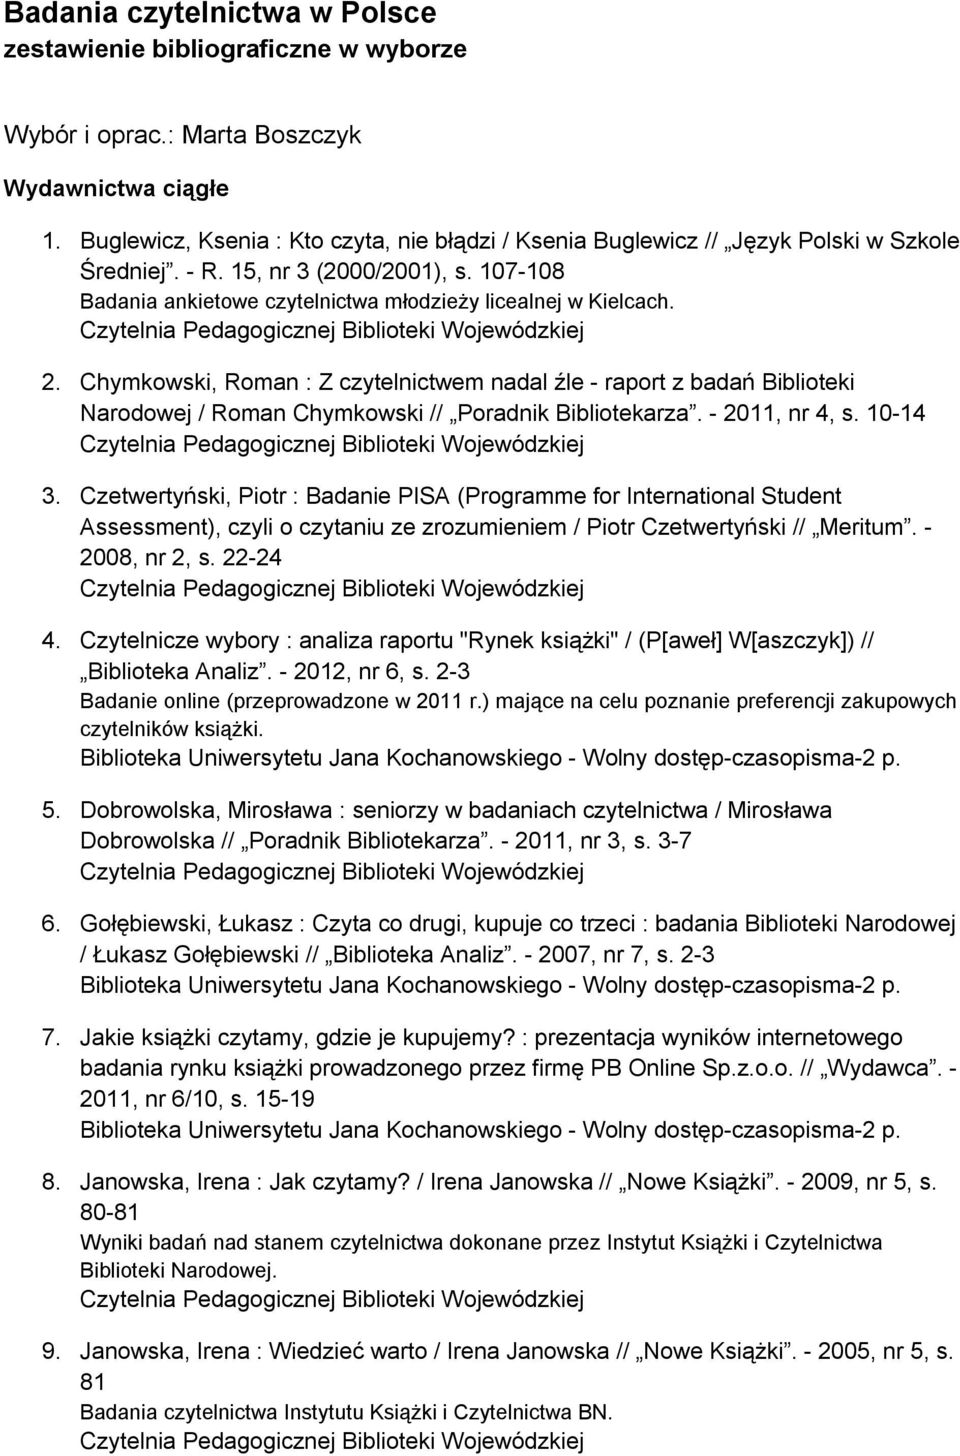 Chymkowski, Roman : Z czytelnictwem nadal źle - raport z badań Biblioteki Narodowej / Roman Chymkowski // Poradnik Bibliotekarza. - 2011, nr 4, s. 10-14 3.